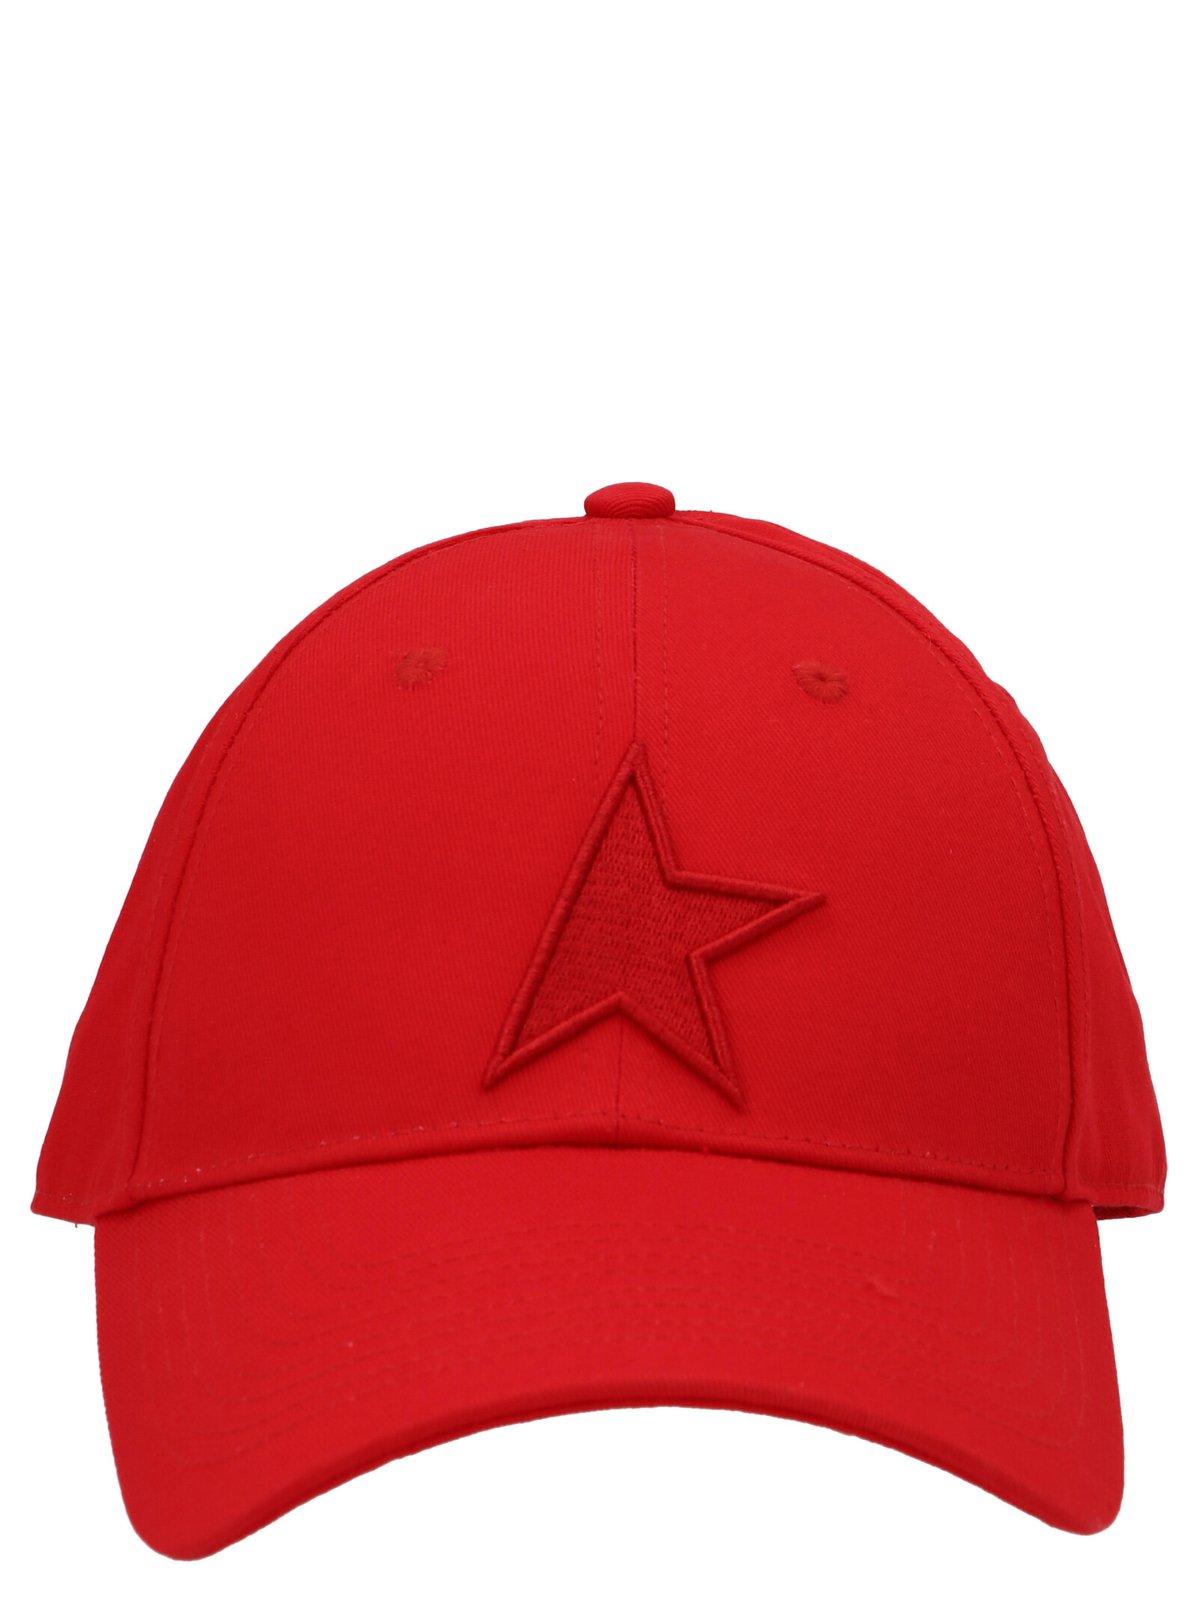 GOLDEN GOOSE STAR PATCH BASEBALL CAP